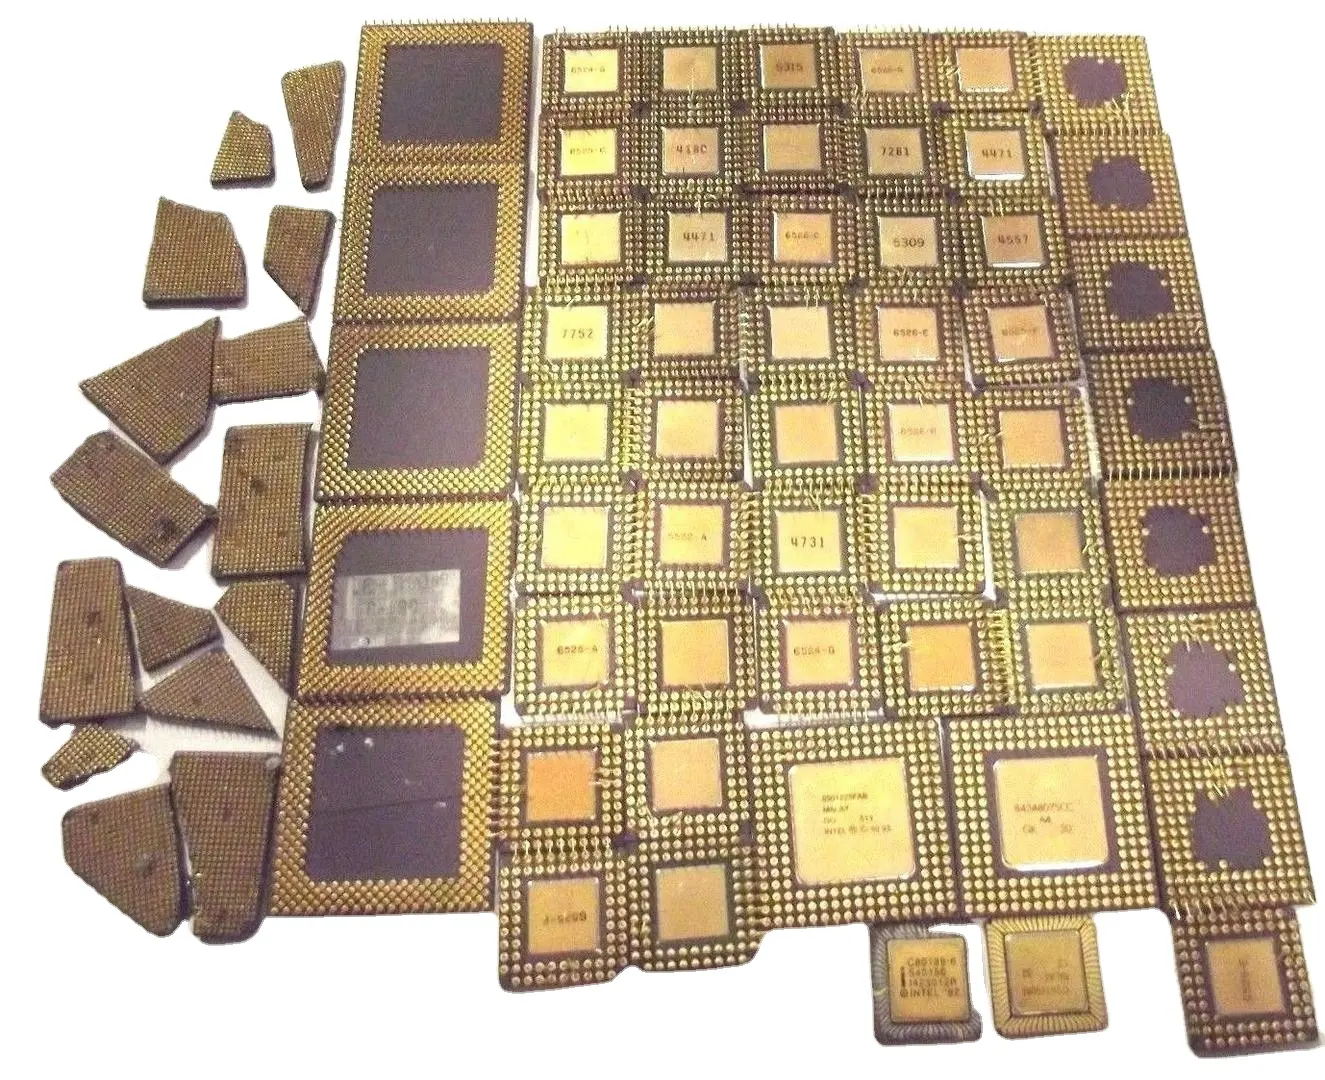 ผลผลิตสูงการกู้คืนทอง CPU เซรามิกประมวลผลเศษ/เซรามิก CPU เศษ/คอมพิวเตอร์